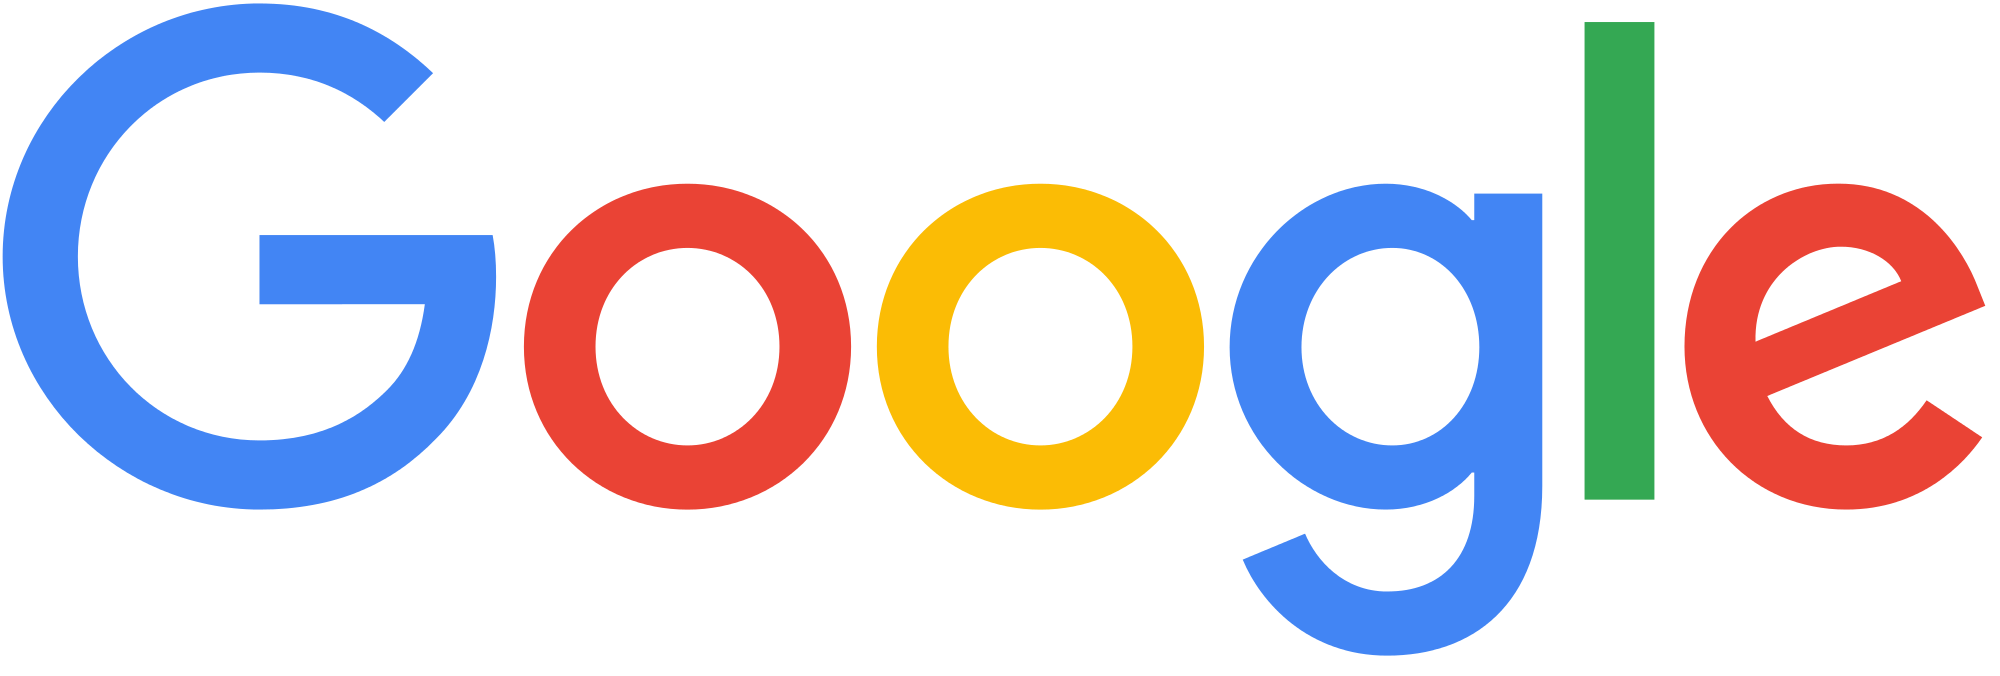 google-logo-large